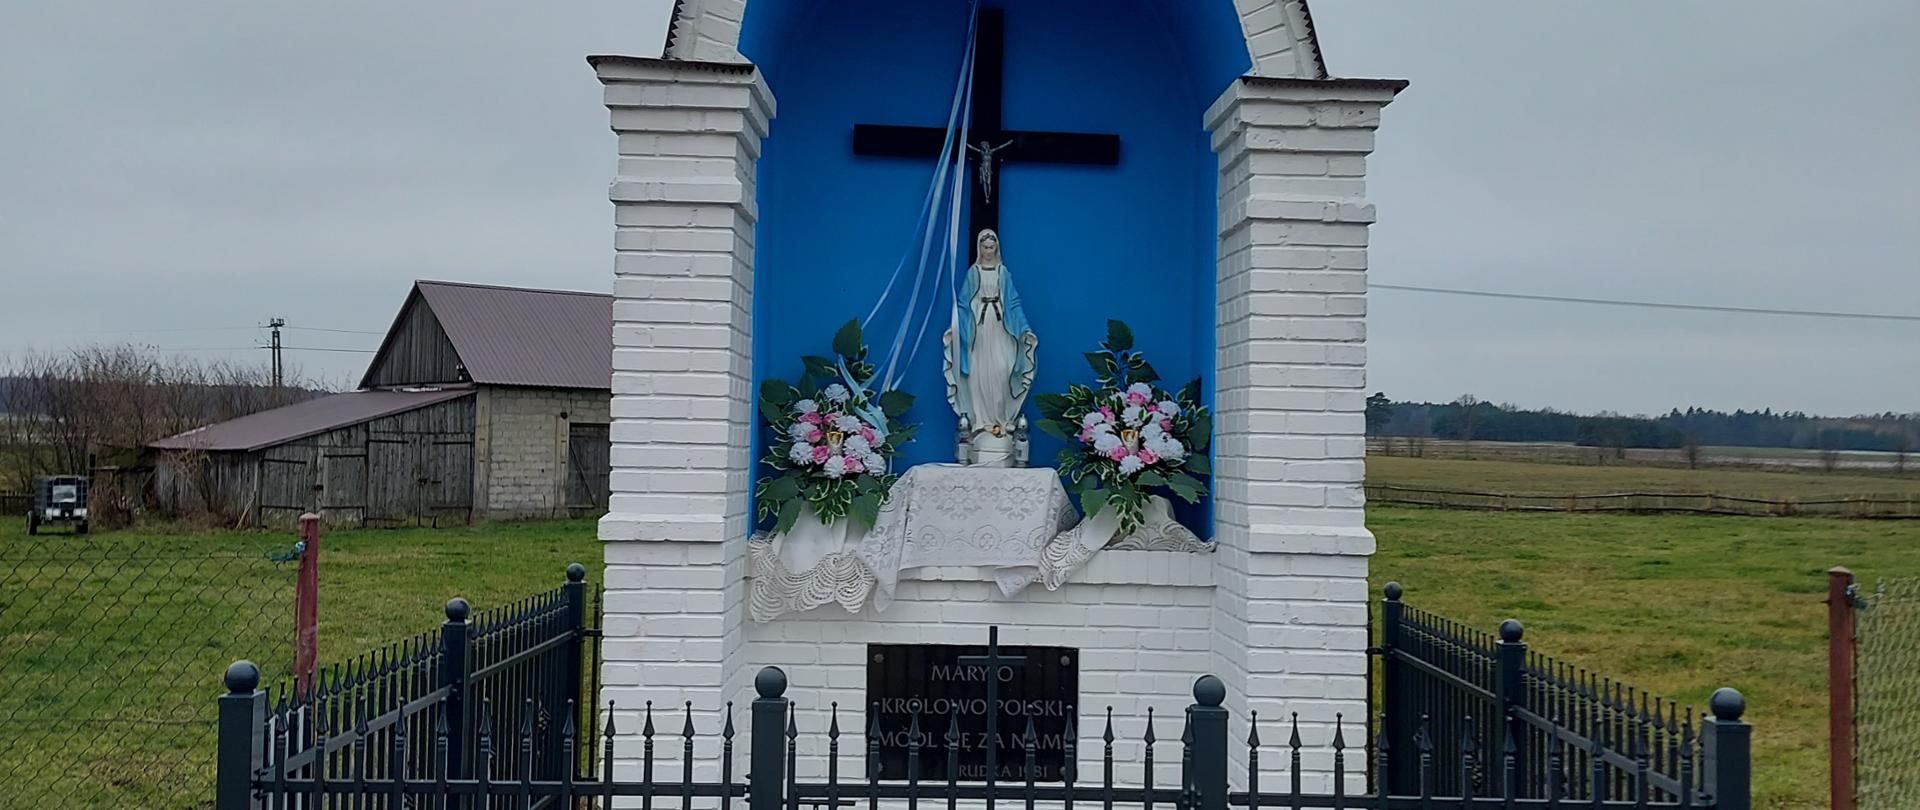 Zdjęcie przedstawia przydrożną murowaną kapliczkę znajdującą się przy ul. Łąkowej w Rudce. W kapliczce znajduje się figura Matki Boskiej. Kapliczka jest ogrodzona metalowym ogrodzeniem